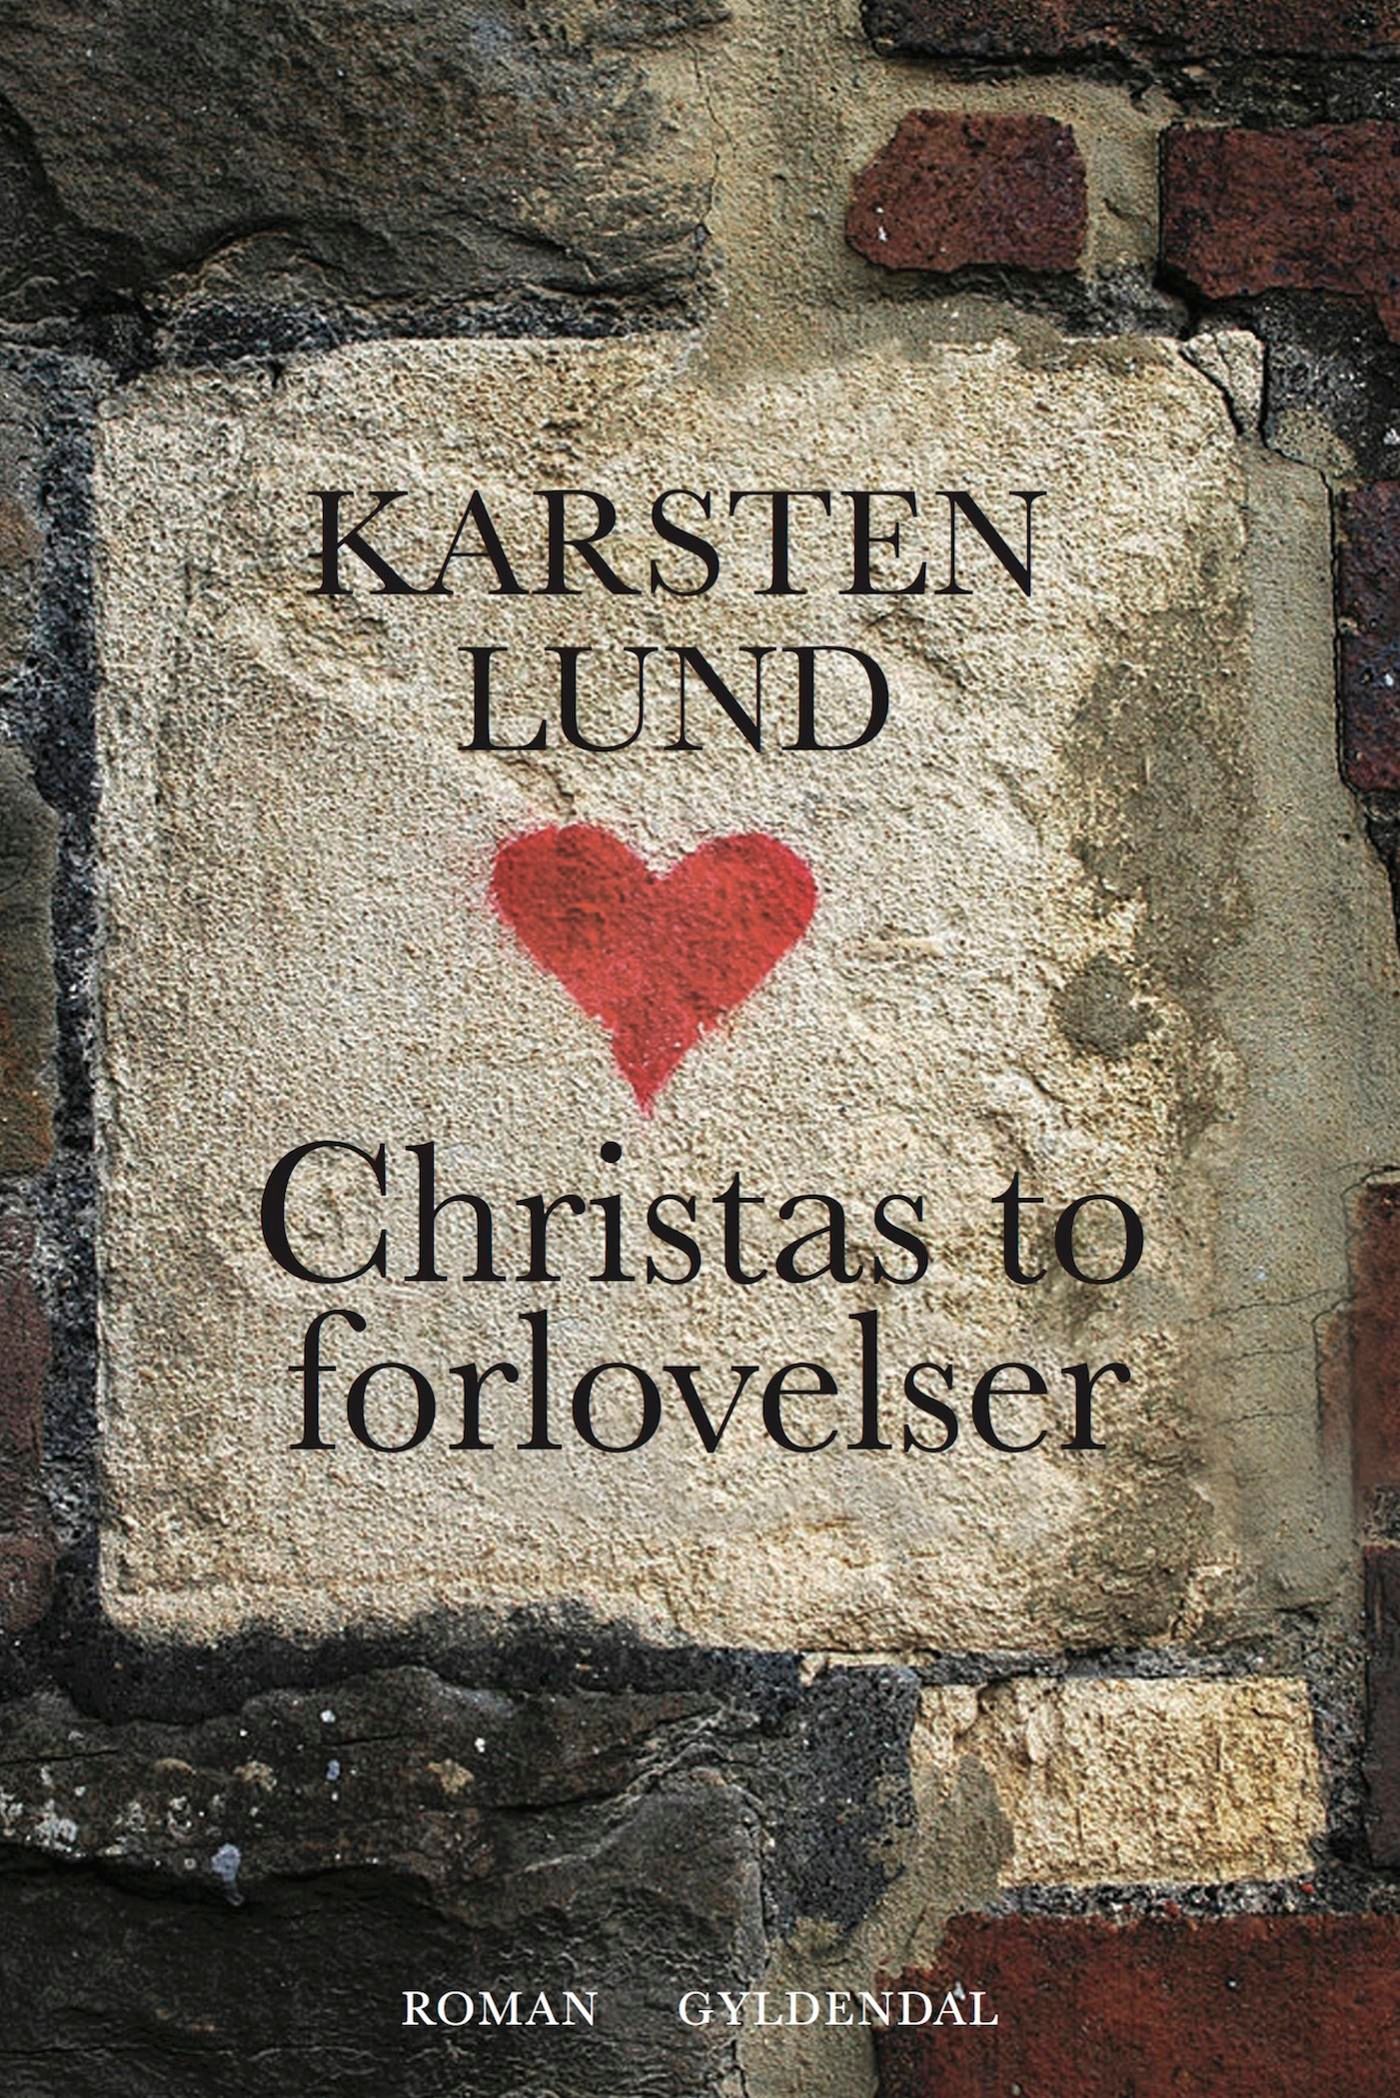 Christas to forlovelser, eBook by Karsten Lund